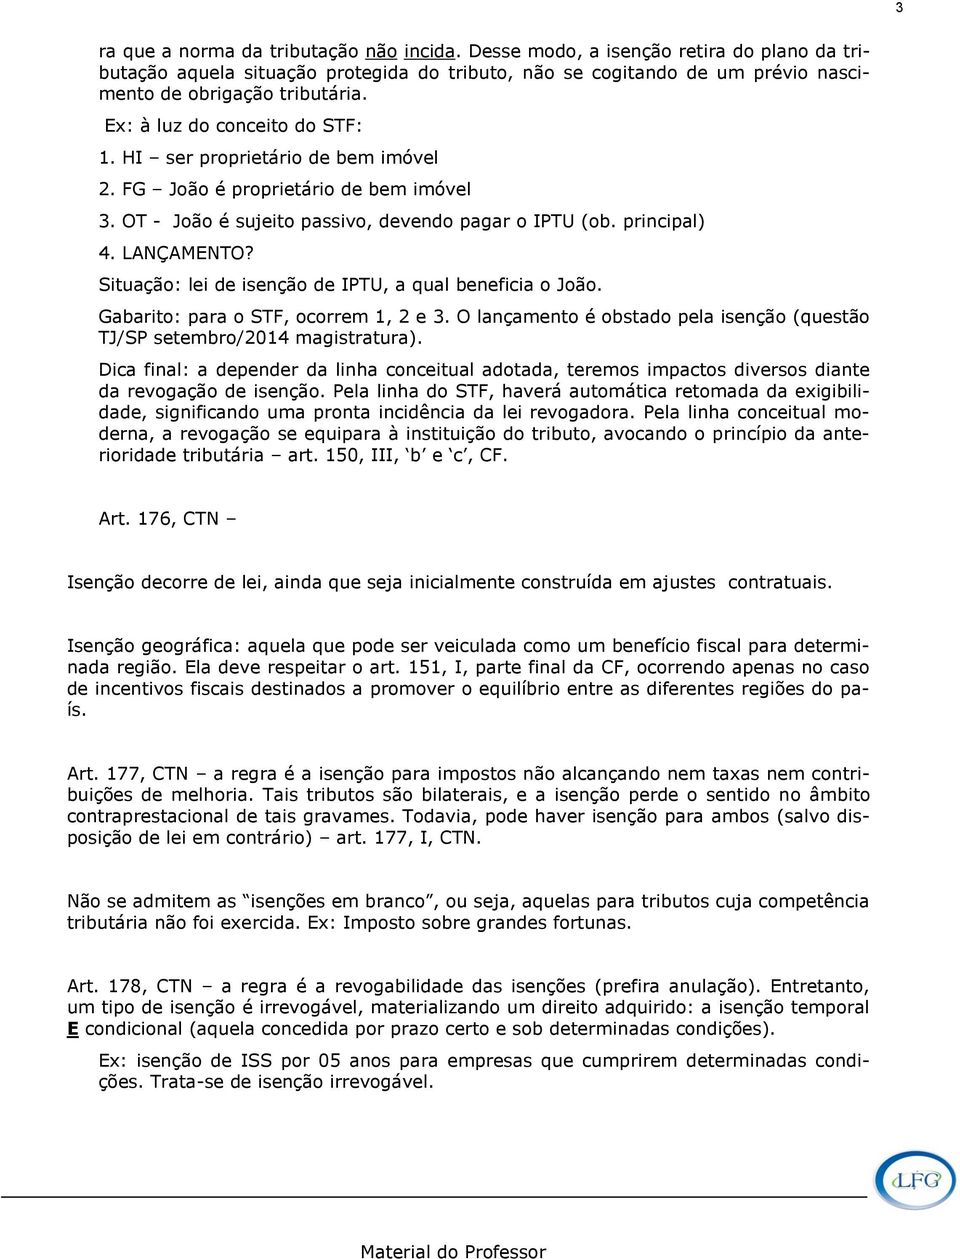 Situação: lei de isenção de IPTU, a qual beneficia o João. Gabarito: para o STF, ocorrem 1, 2 e 3. O lançamento é obstado pela isenção (questão TJ/SP setembro/2014 magistratura).